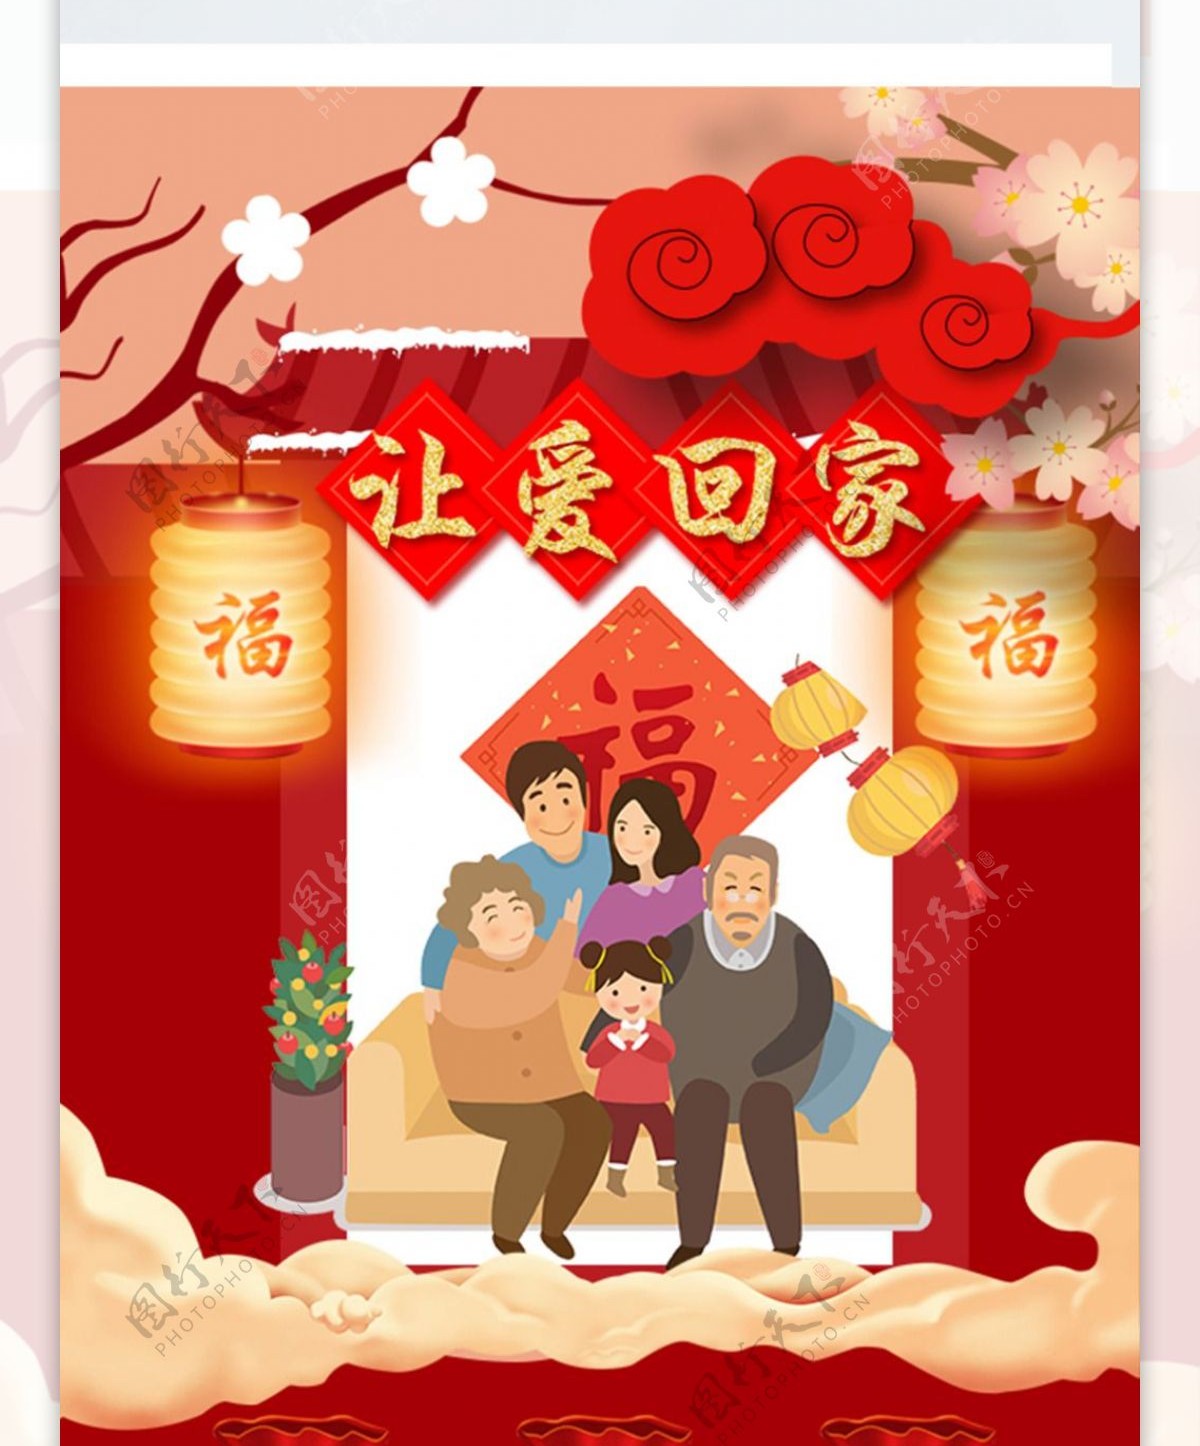 红色中国风让爱回家2018春节新春首页